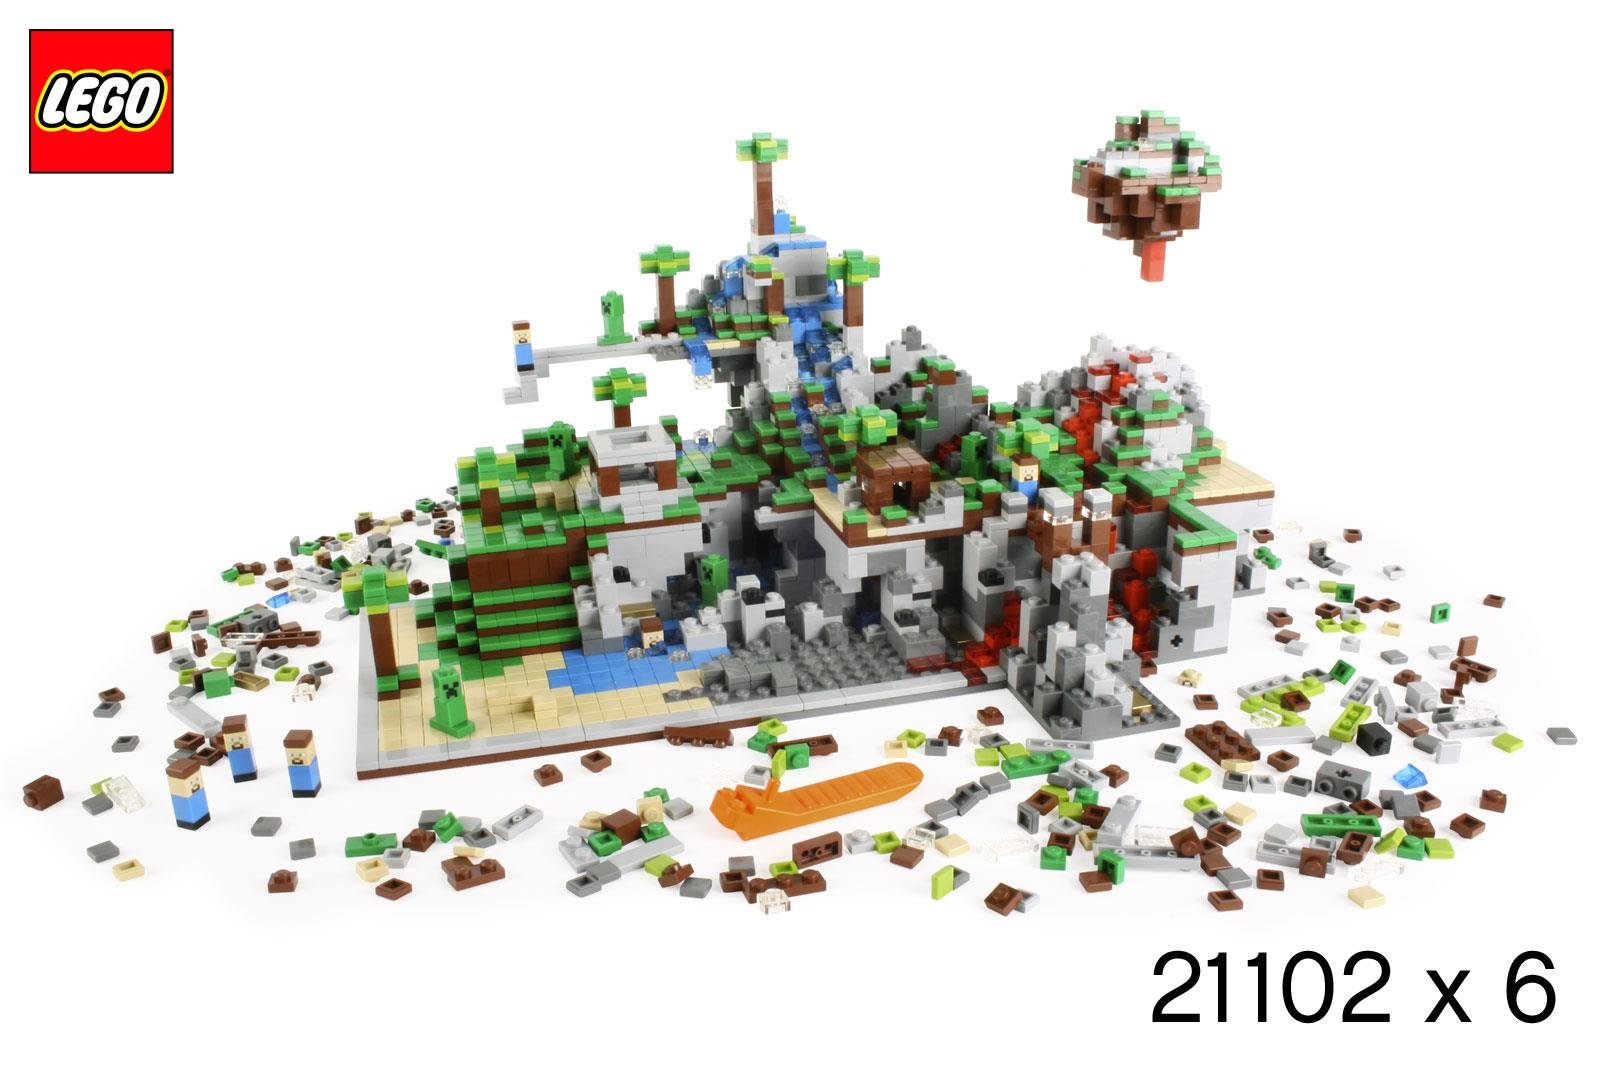 Společnost LEGO vydá společně s Microsoftem speciální edici LEGO: Minecraft